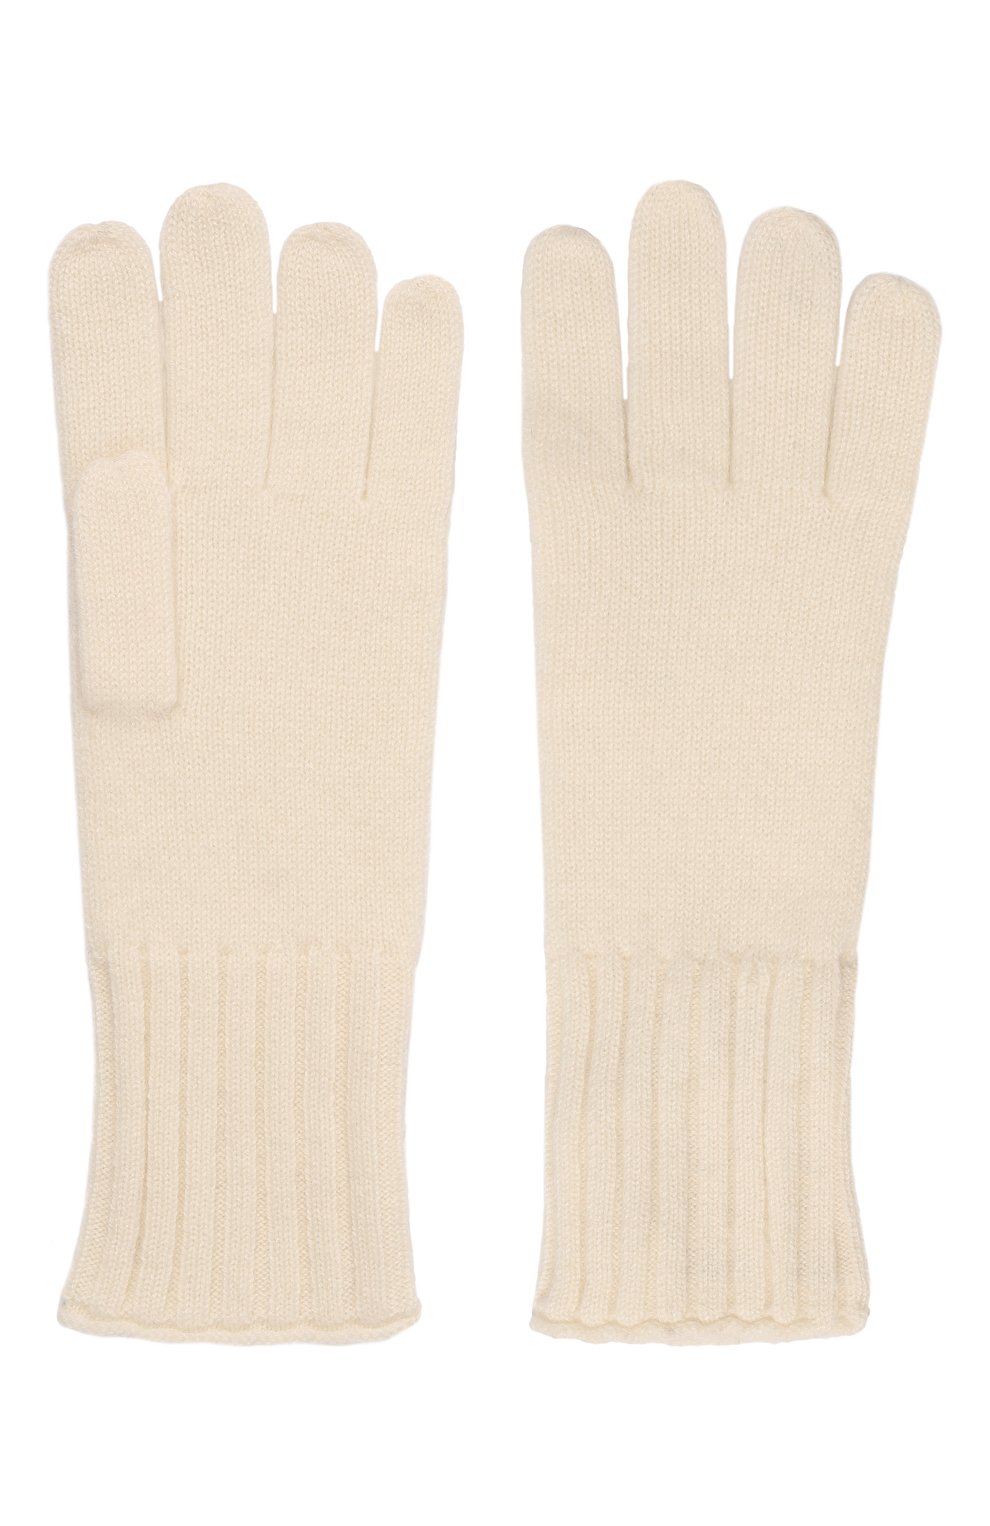 Женские кашемировые перчатки NOT SHY кремвого цвета, арт. 4102032C | Фото 3 (Материал: Текстиль, Кашемир, Шерсть)